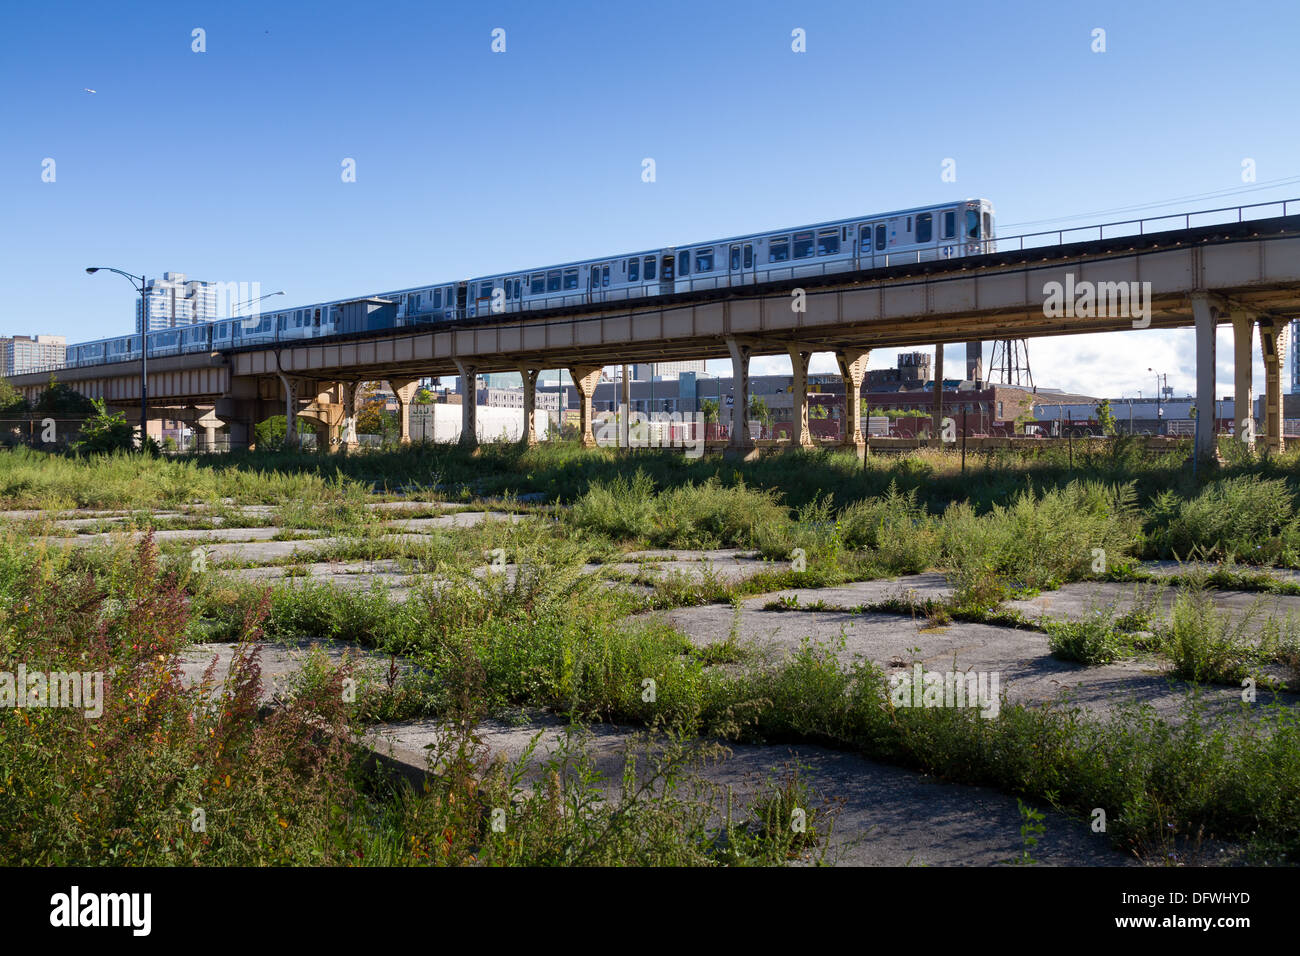 Cta treno metro in Chicago lato sud surburb Foto Stock